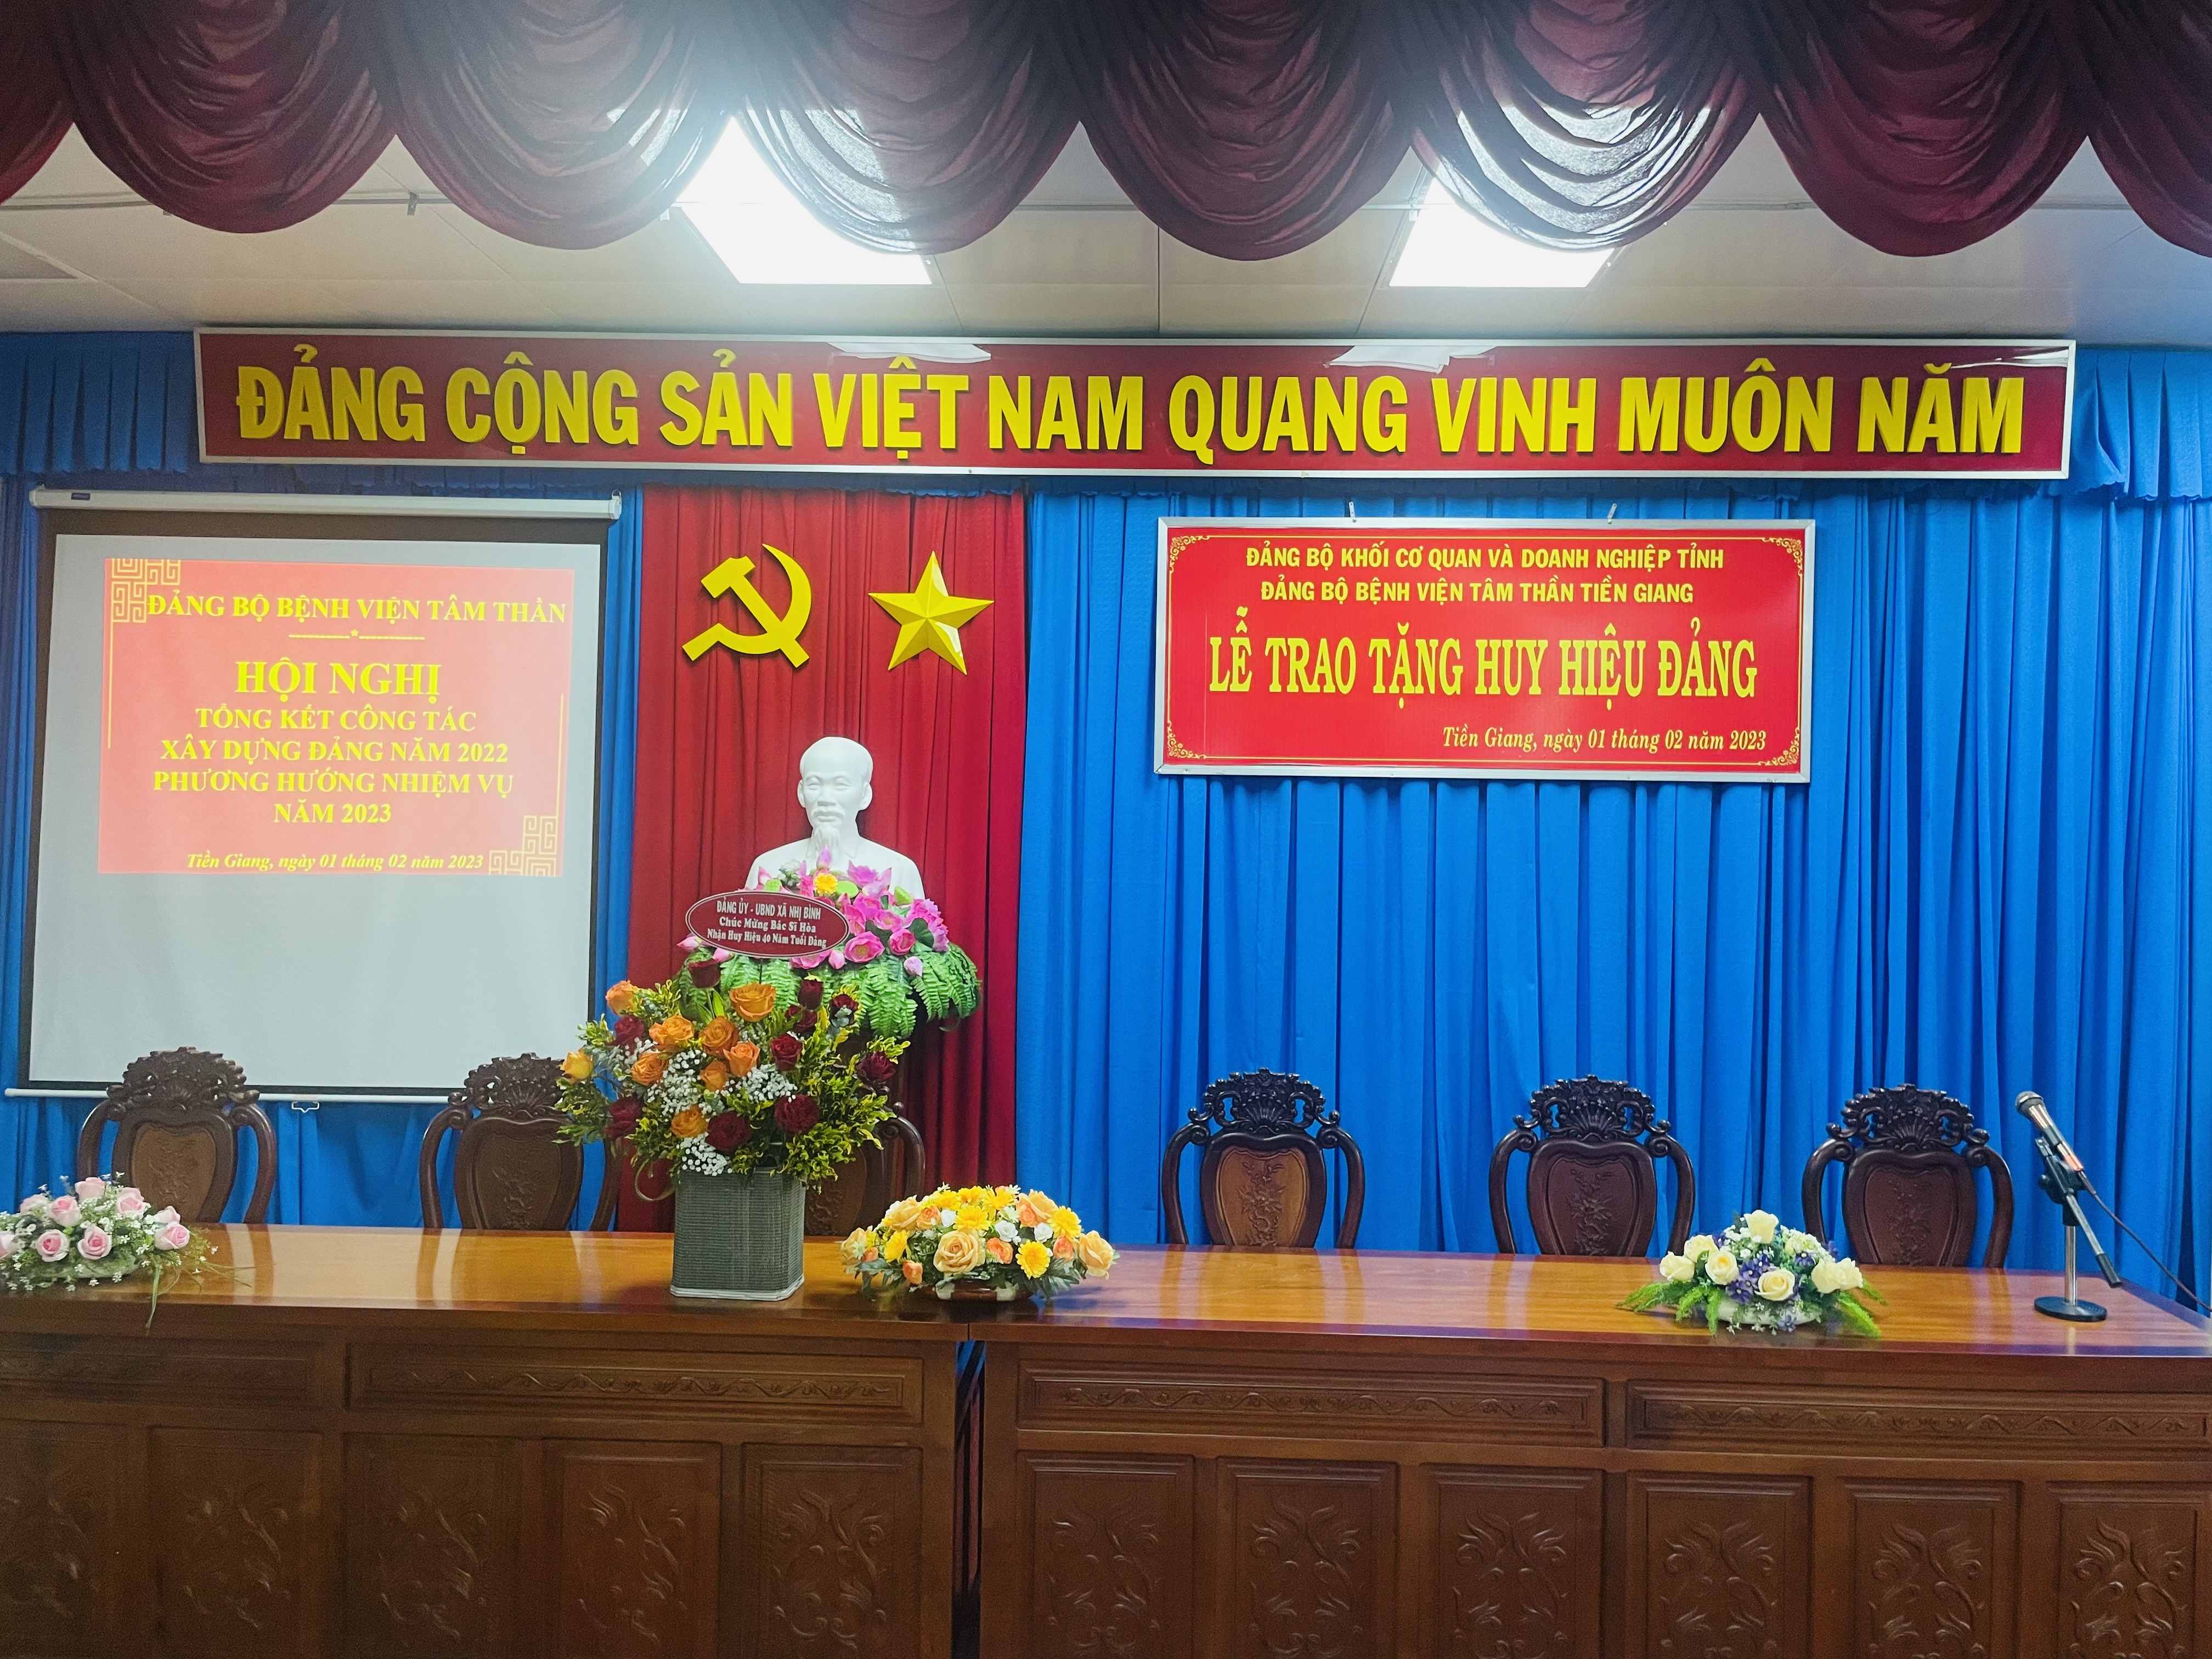 Đảng bộ Bệnh viện Tâm thần Tiền Giang tổ chức trao Huy hiệu 40 năm tuổi Đảng đợt 3/2 và tổng kết công tác xây dựng Đảng năm 2022.